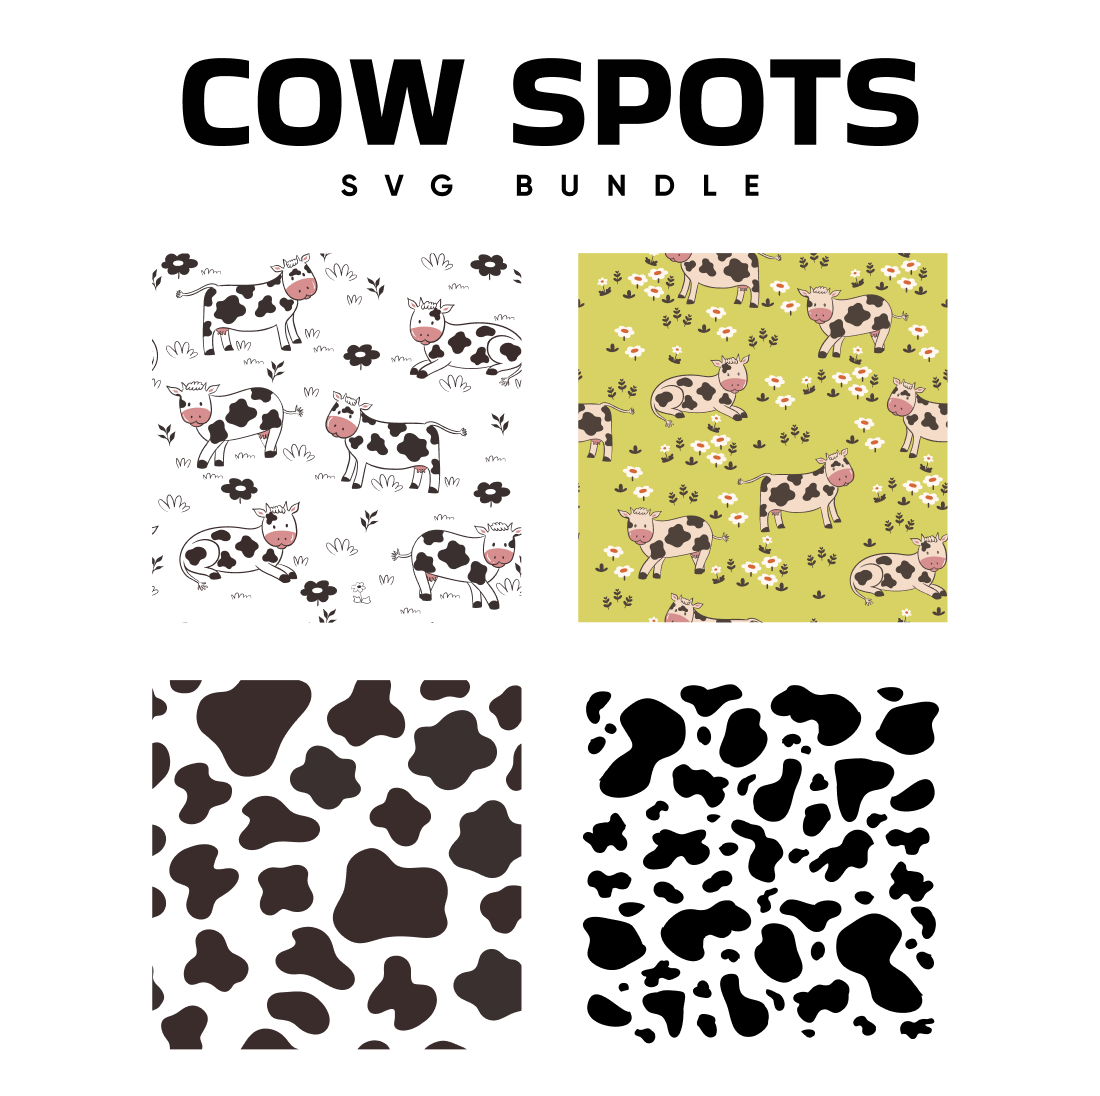 Cow spots svg bundle.